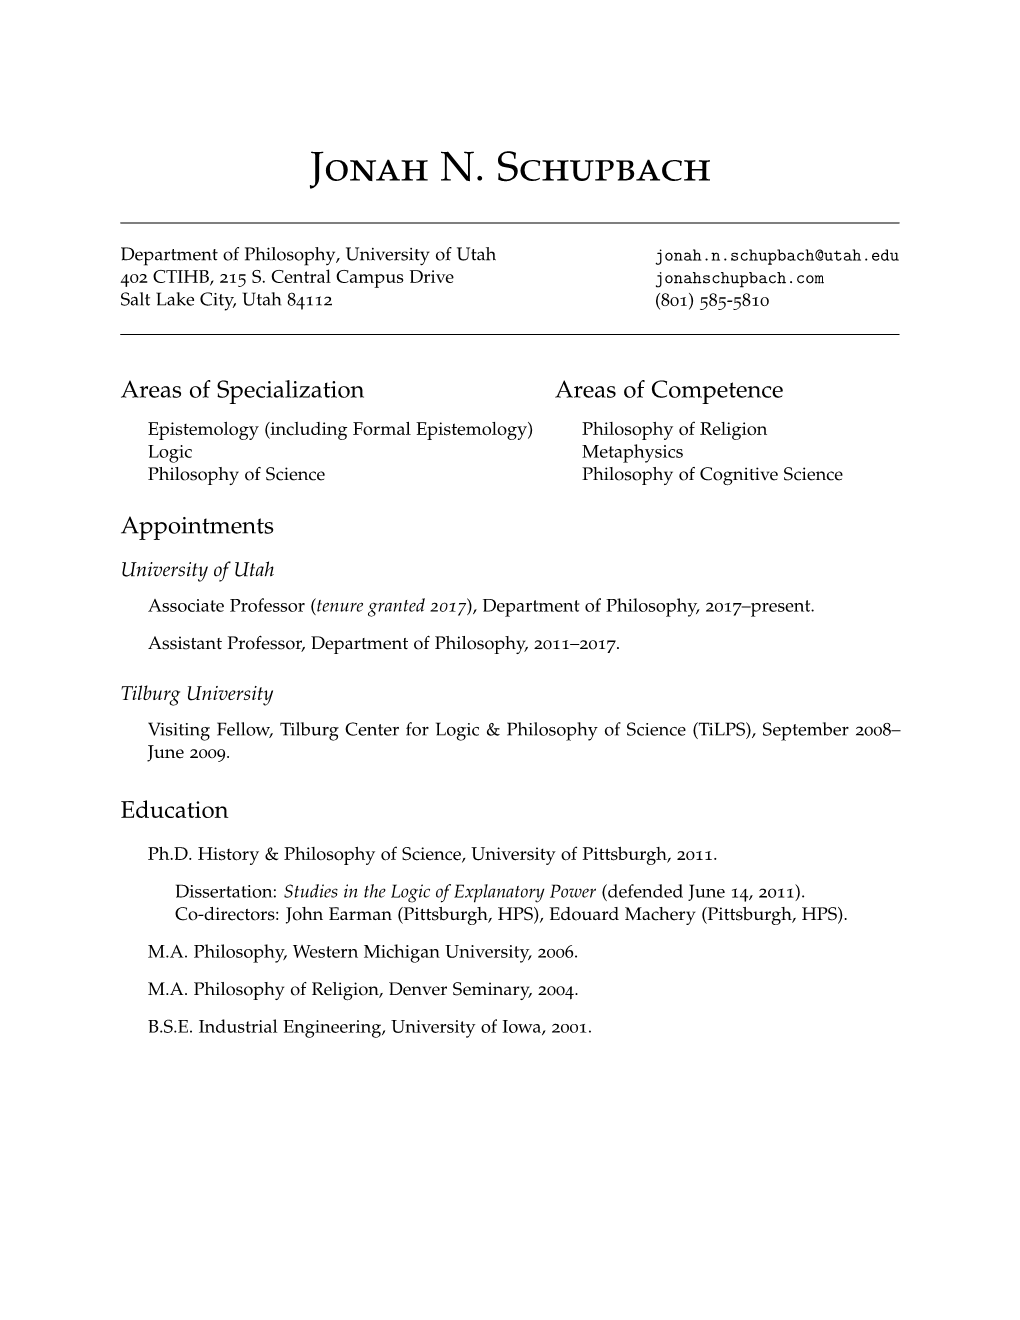 Jonah N. Schupbach: Curriculum Vitae